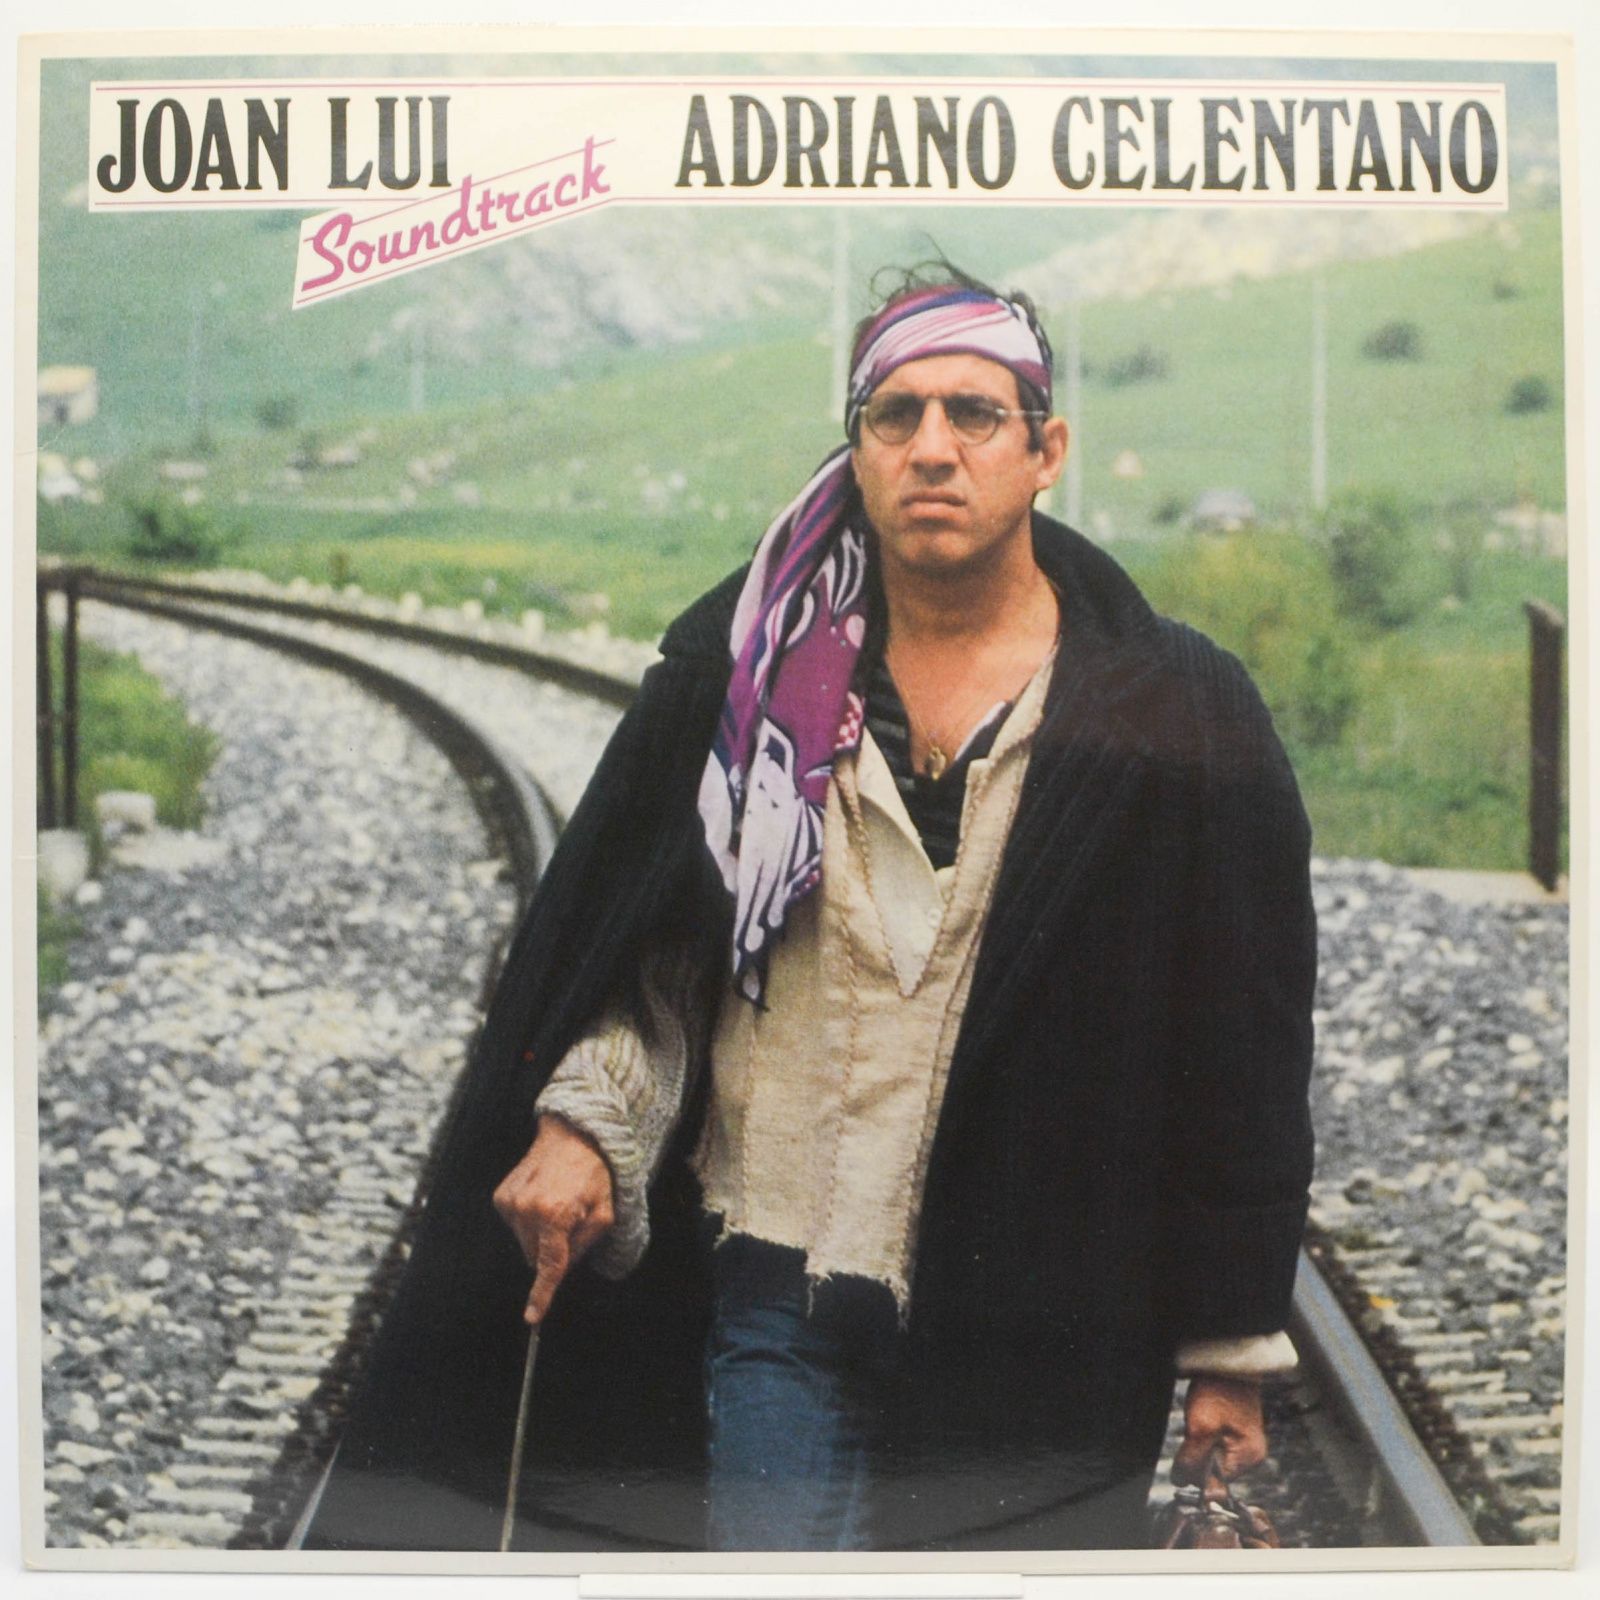 Adriano Celentano — Joan Lui (Soundtrack), 1985